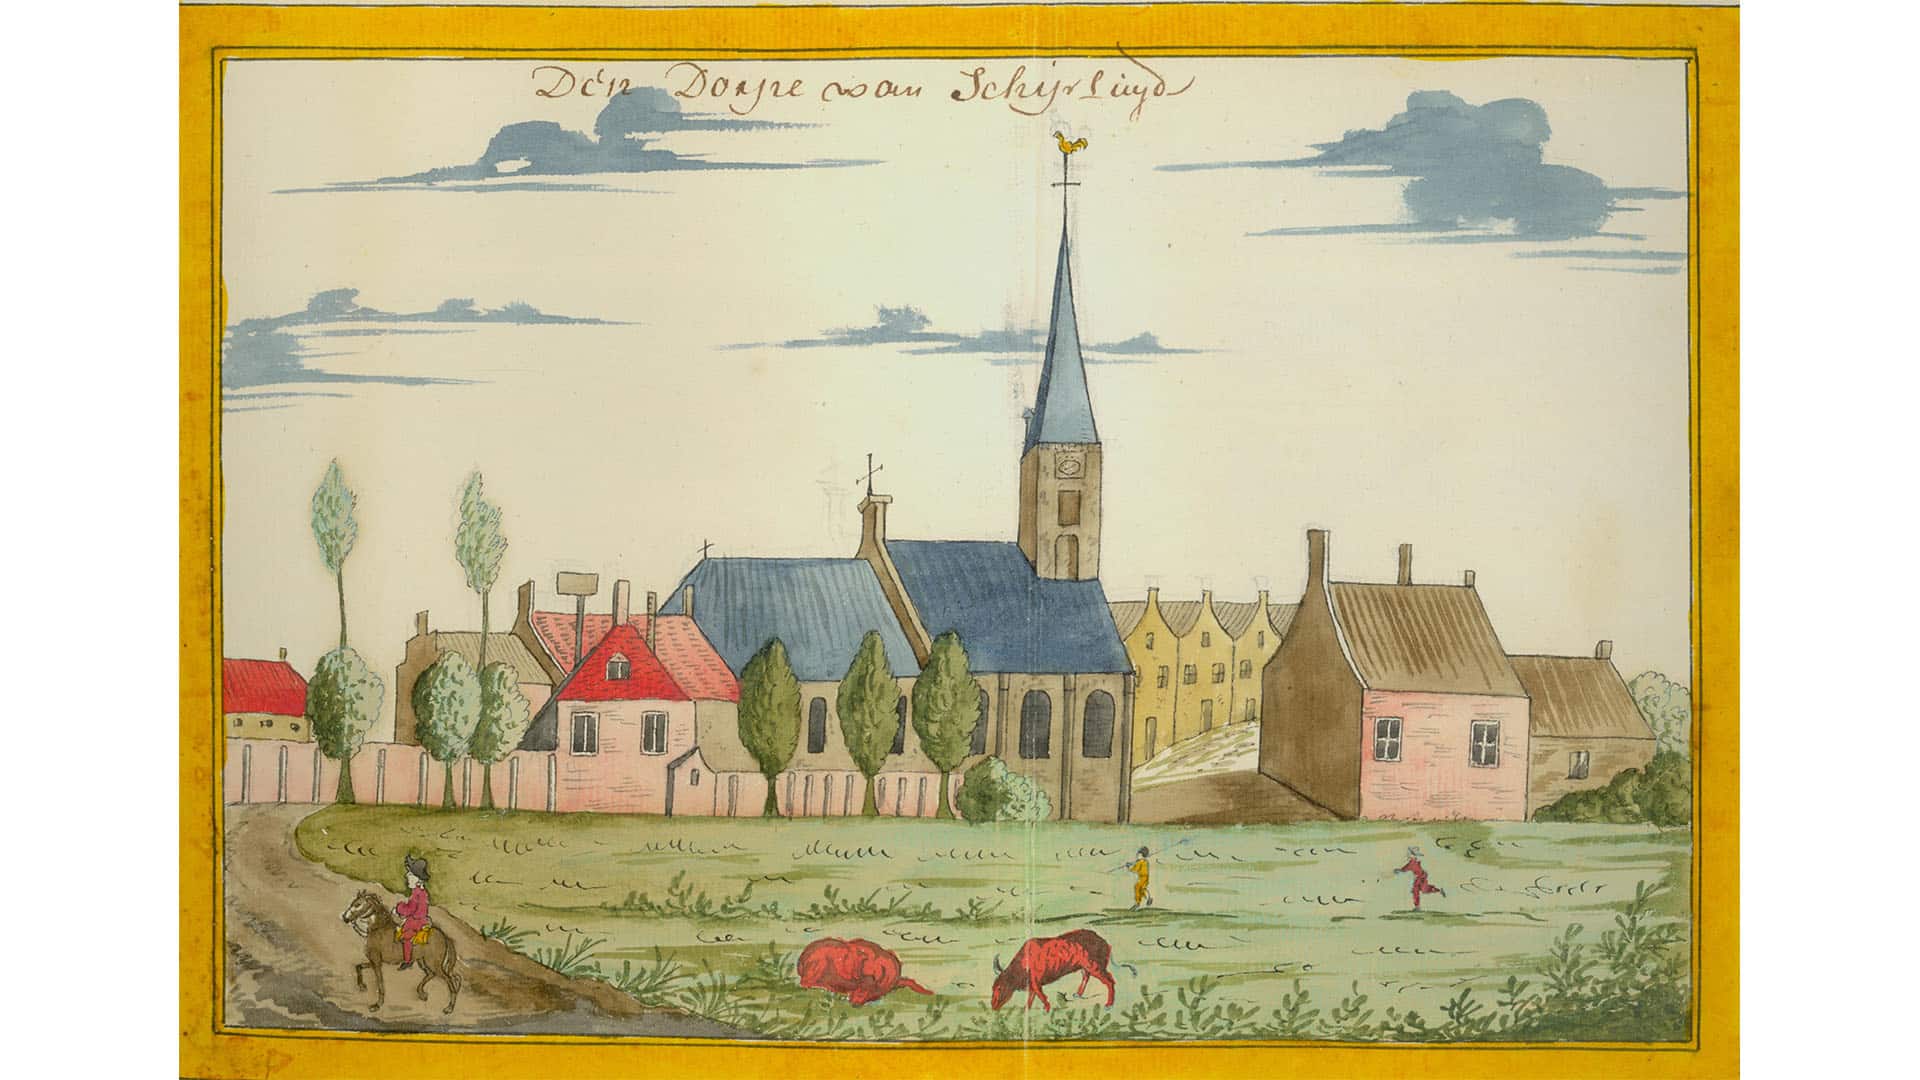 Stadgezicht van dorp Schipluiden uit 1700 van het Stadsarchief Delft